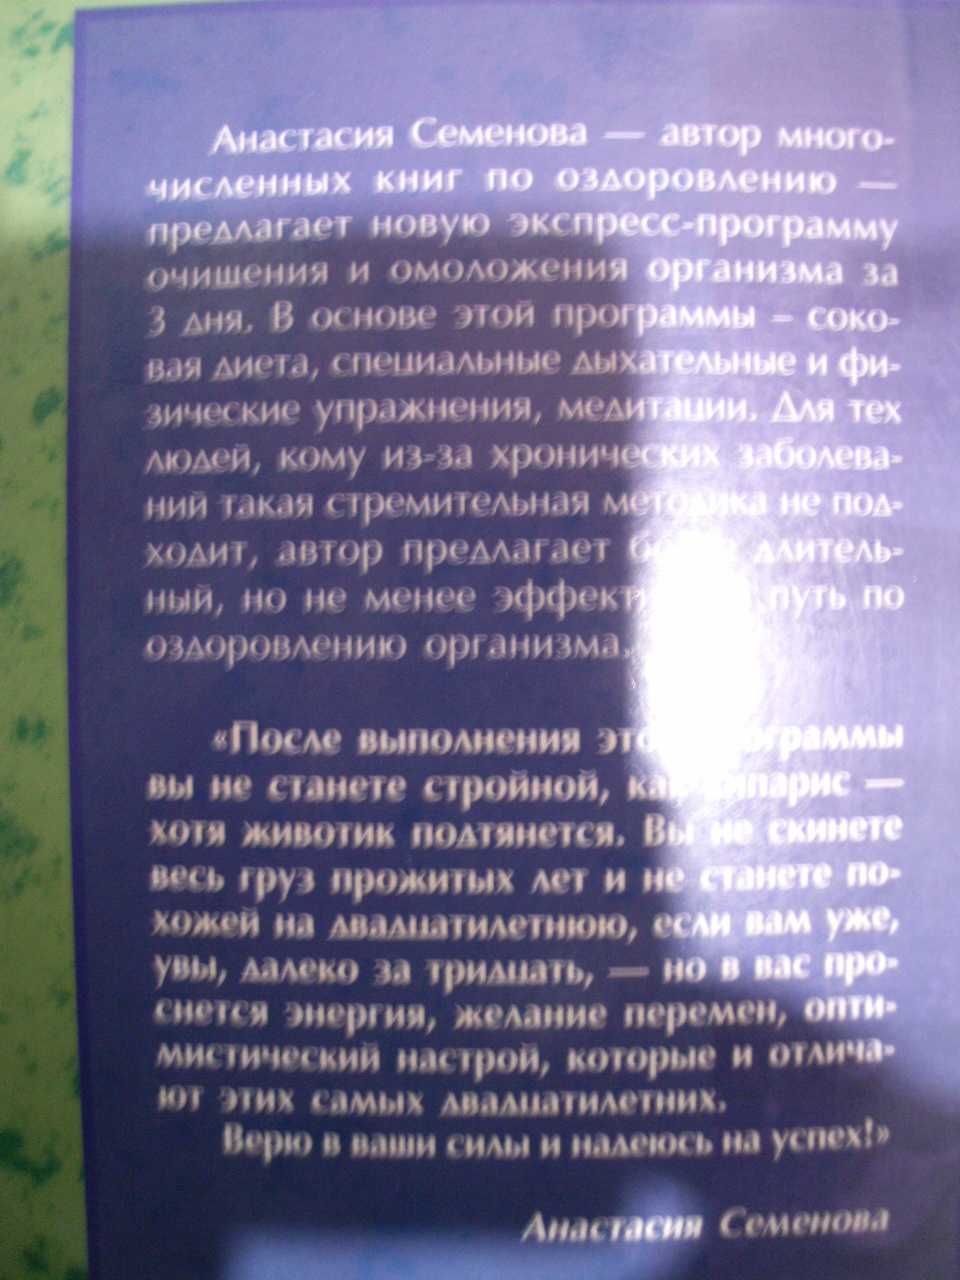 Книга  "Экспресс-программа очищение организма" Анастасия Семенова